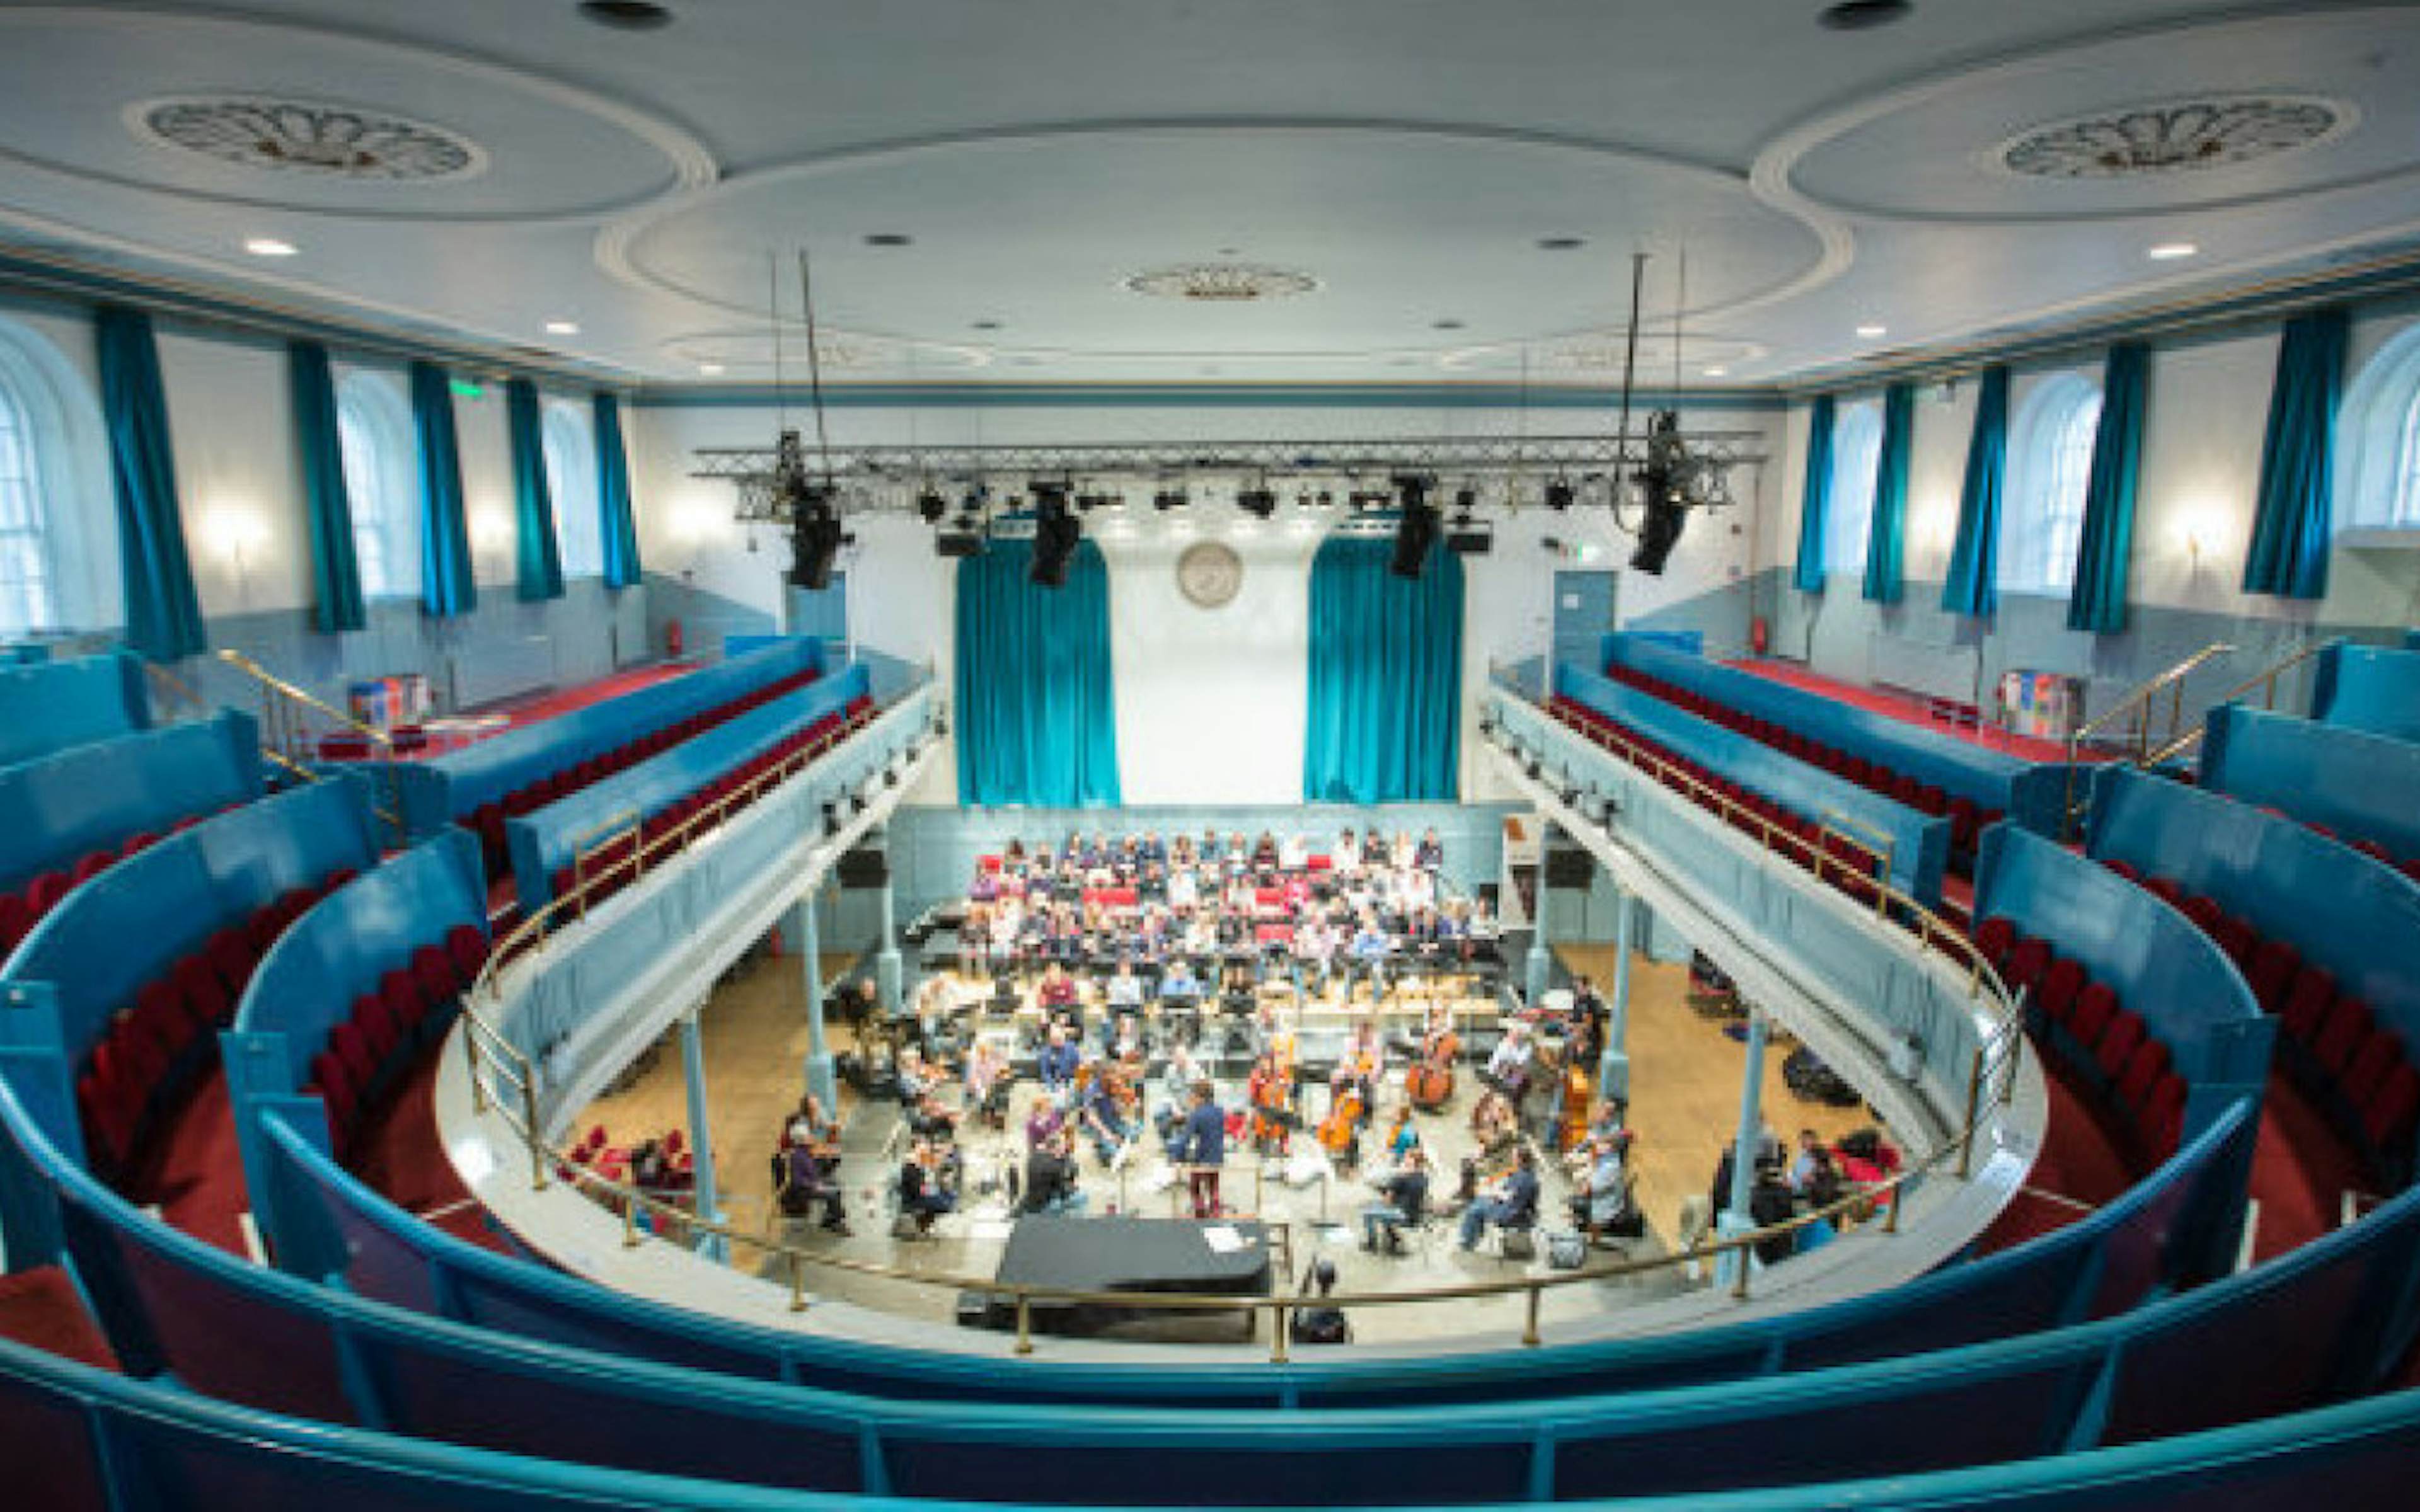 Auditorium - image